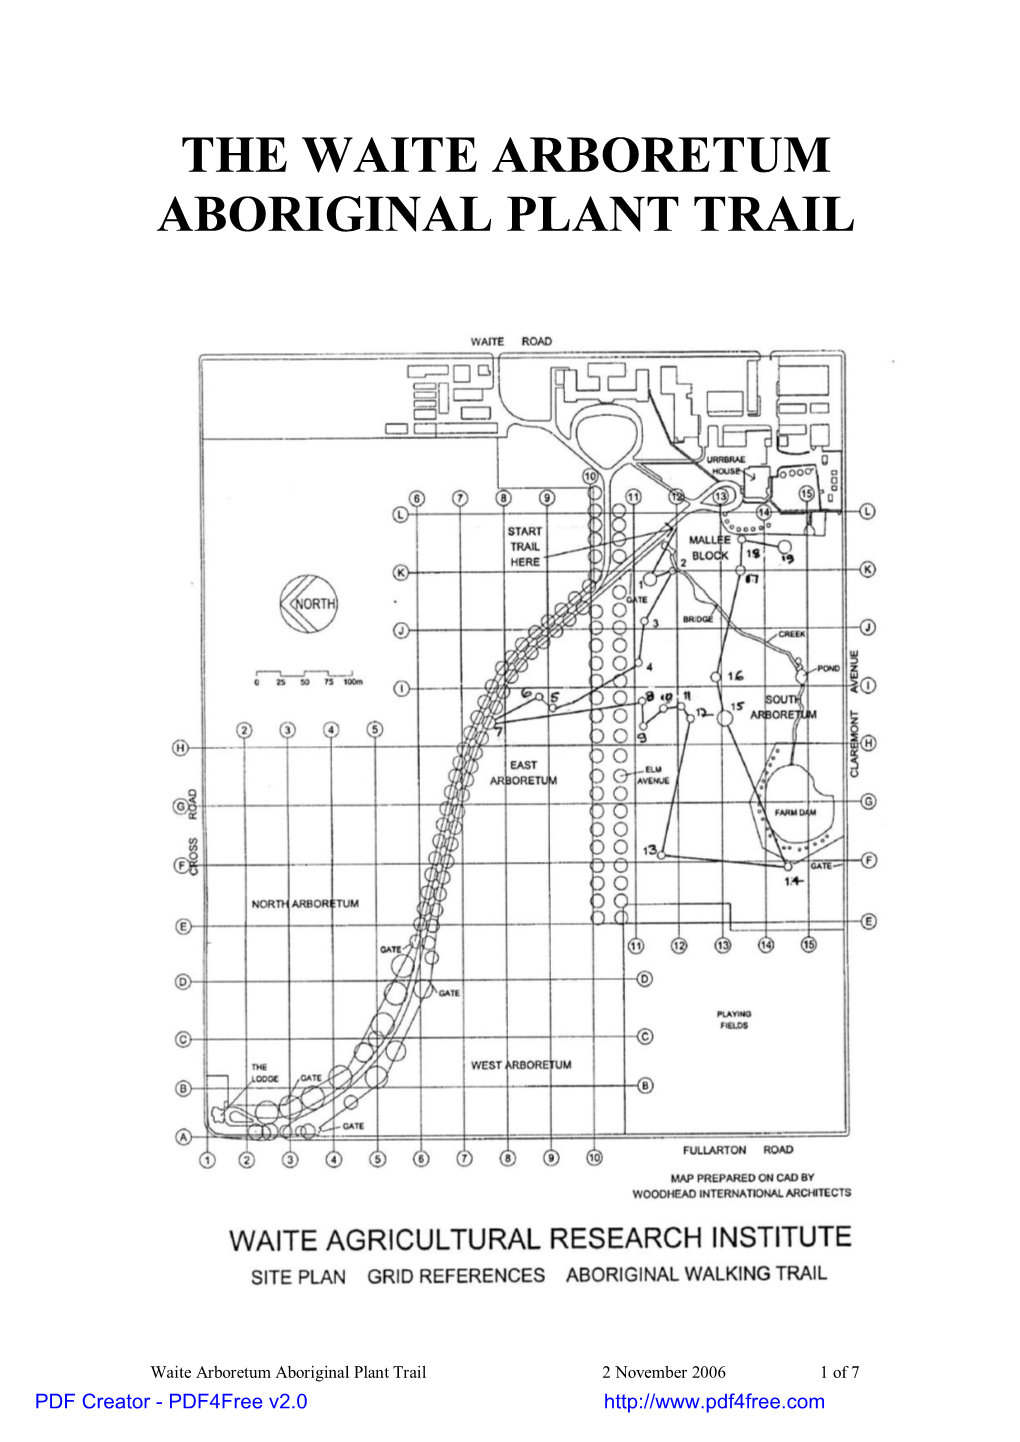 The Waite Arboretum Aboriginal Plant Trail